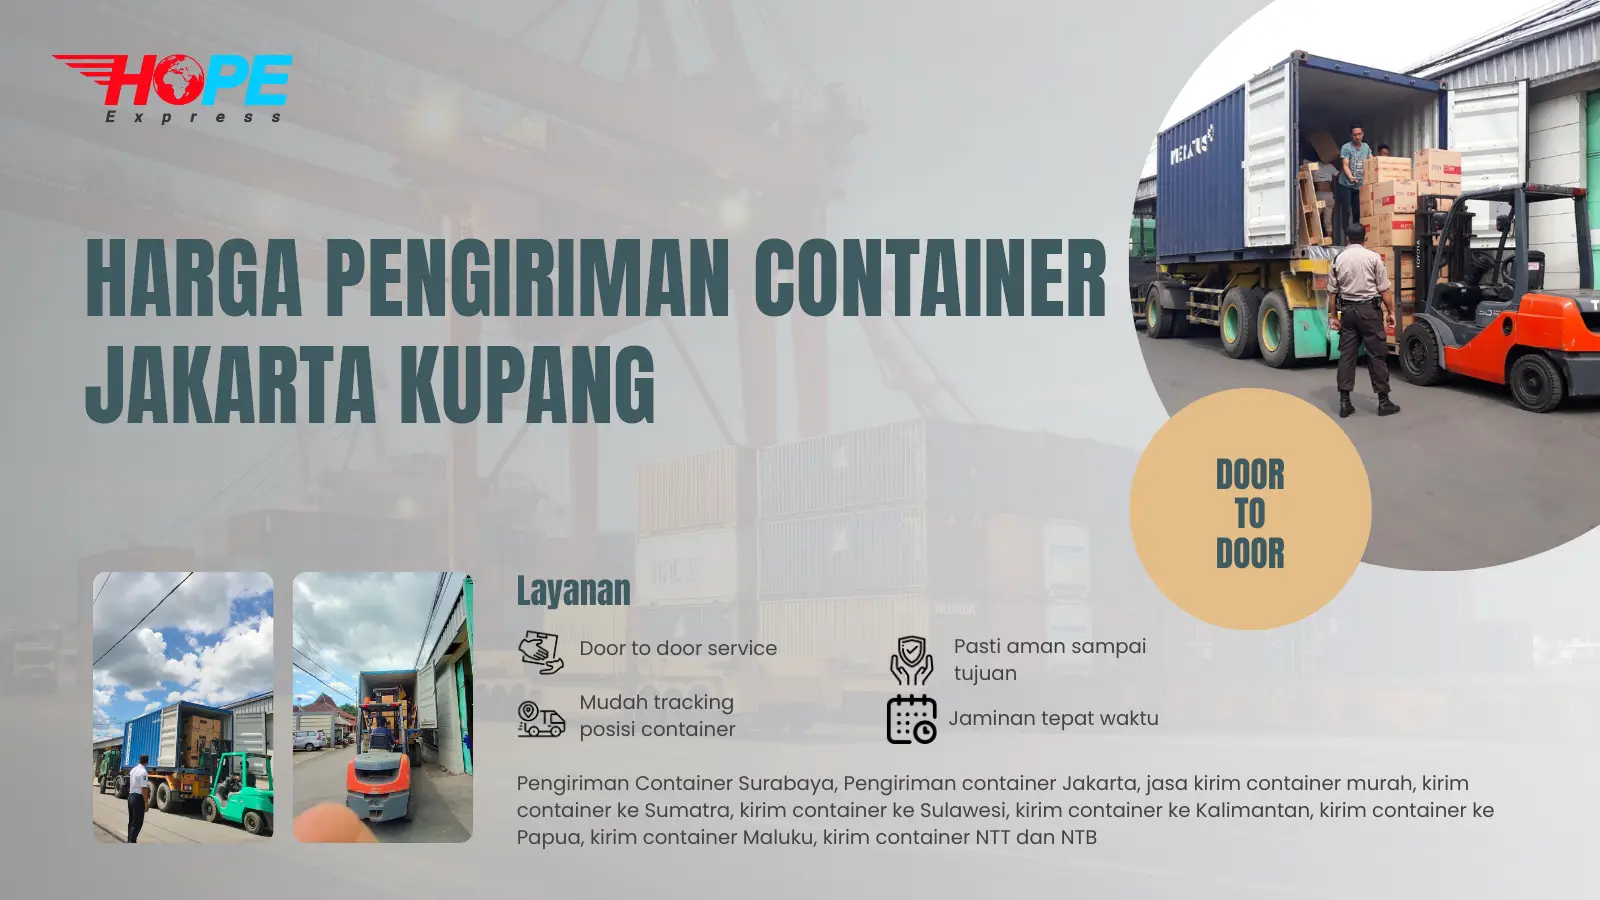 Harga Pengiriman Container Jakarta Kupang